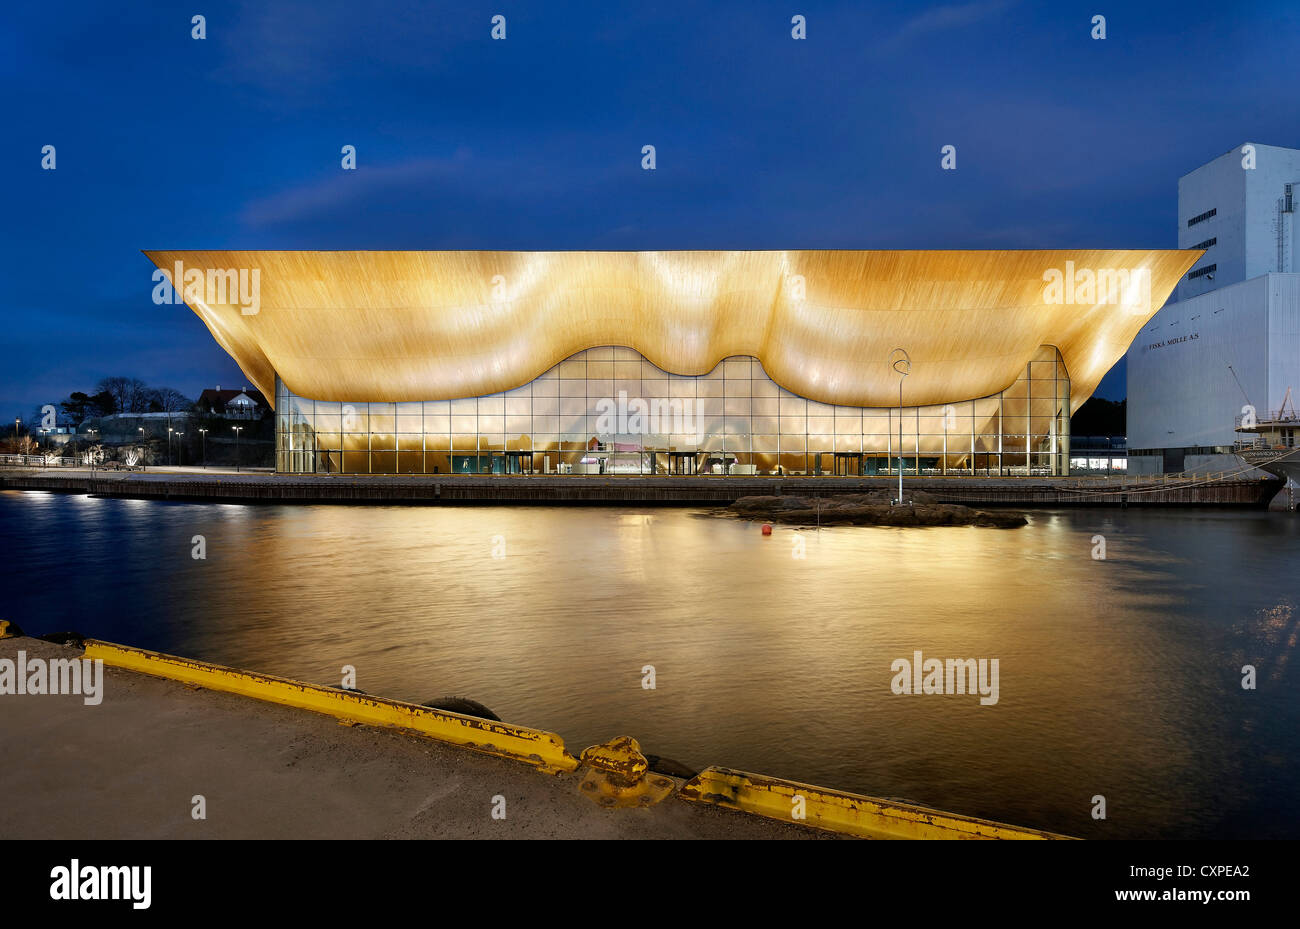 Kilden Performing Arts Centre, Kristiansand, Norvège. Architecte : ALA Architects, 2011. Crépuscule tourné à travers l'eau. Banque D'Images